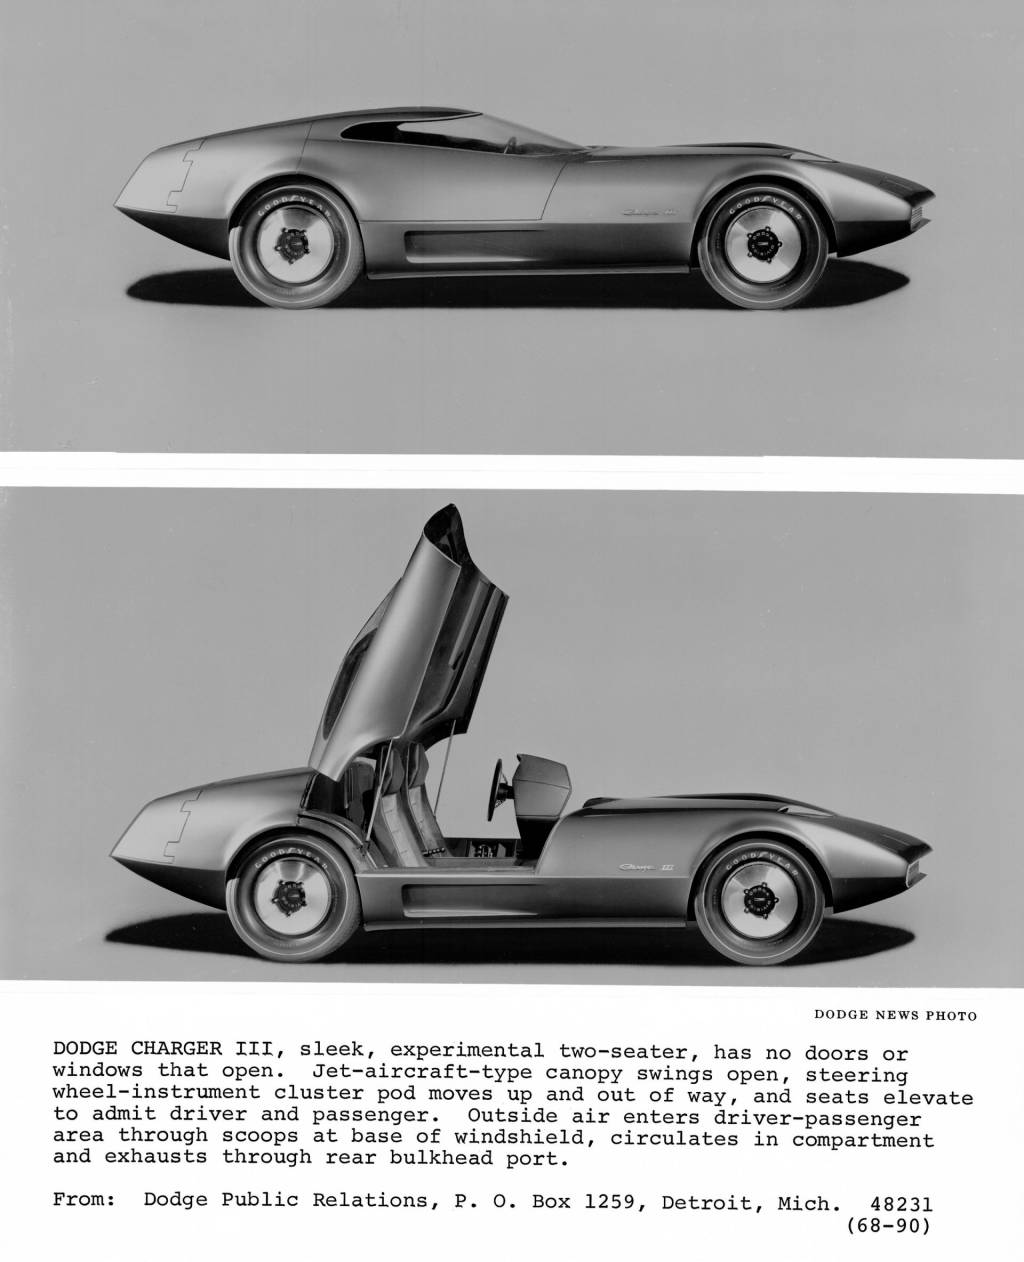 خودروی مفهومی دوج چارجر III مدل 1968 (با اجازه استیلانتیس مدیا)